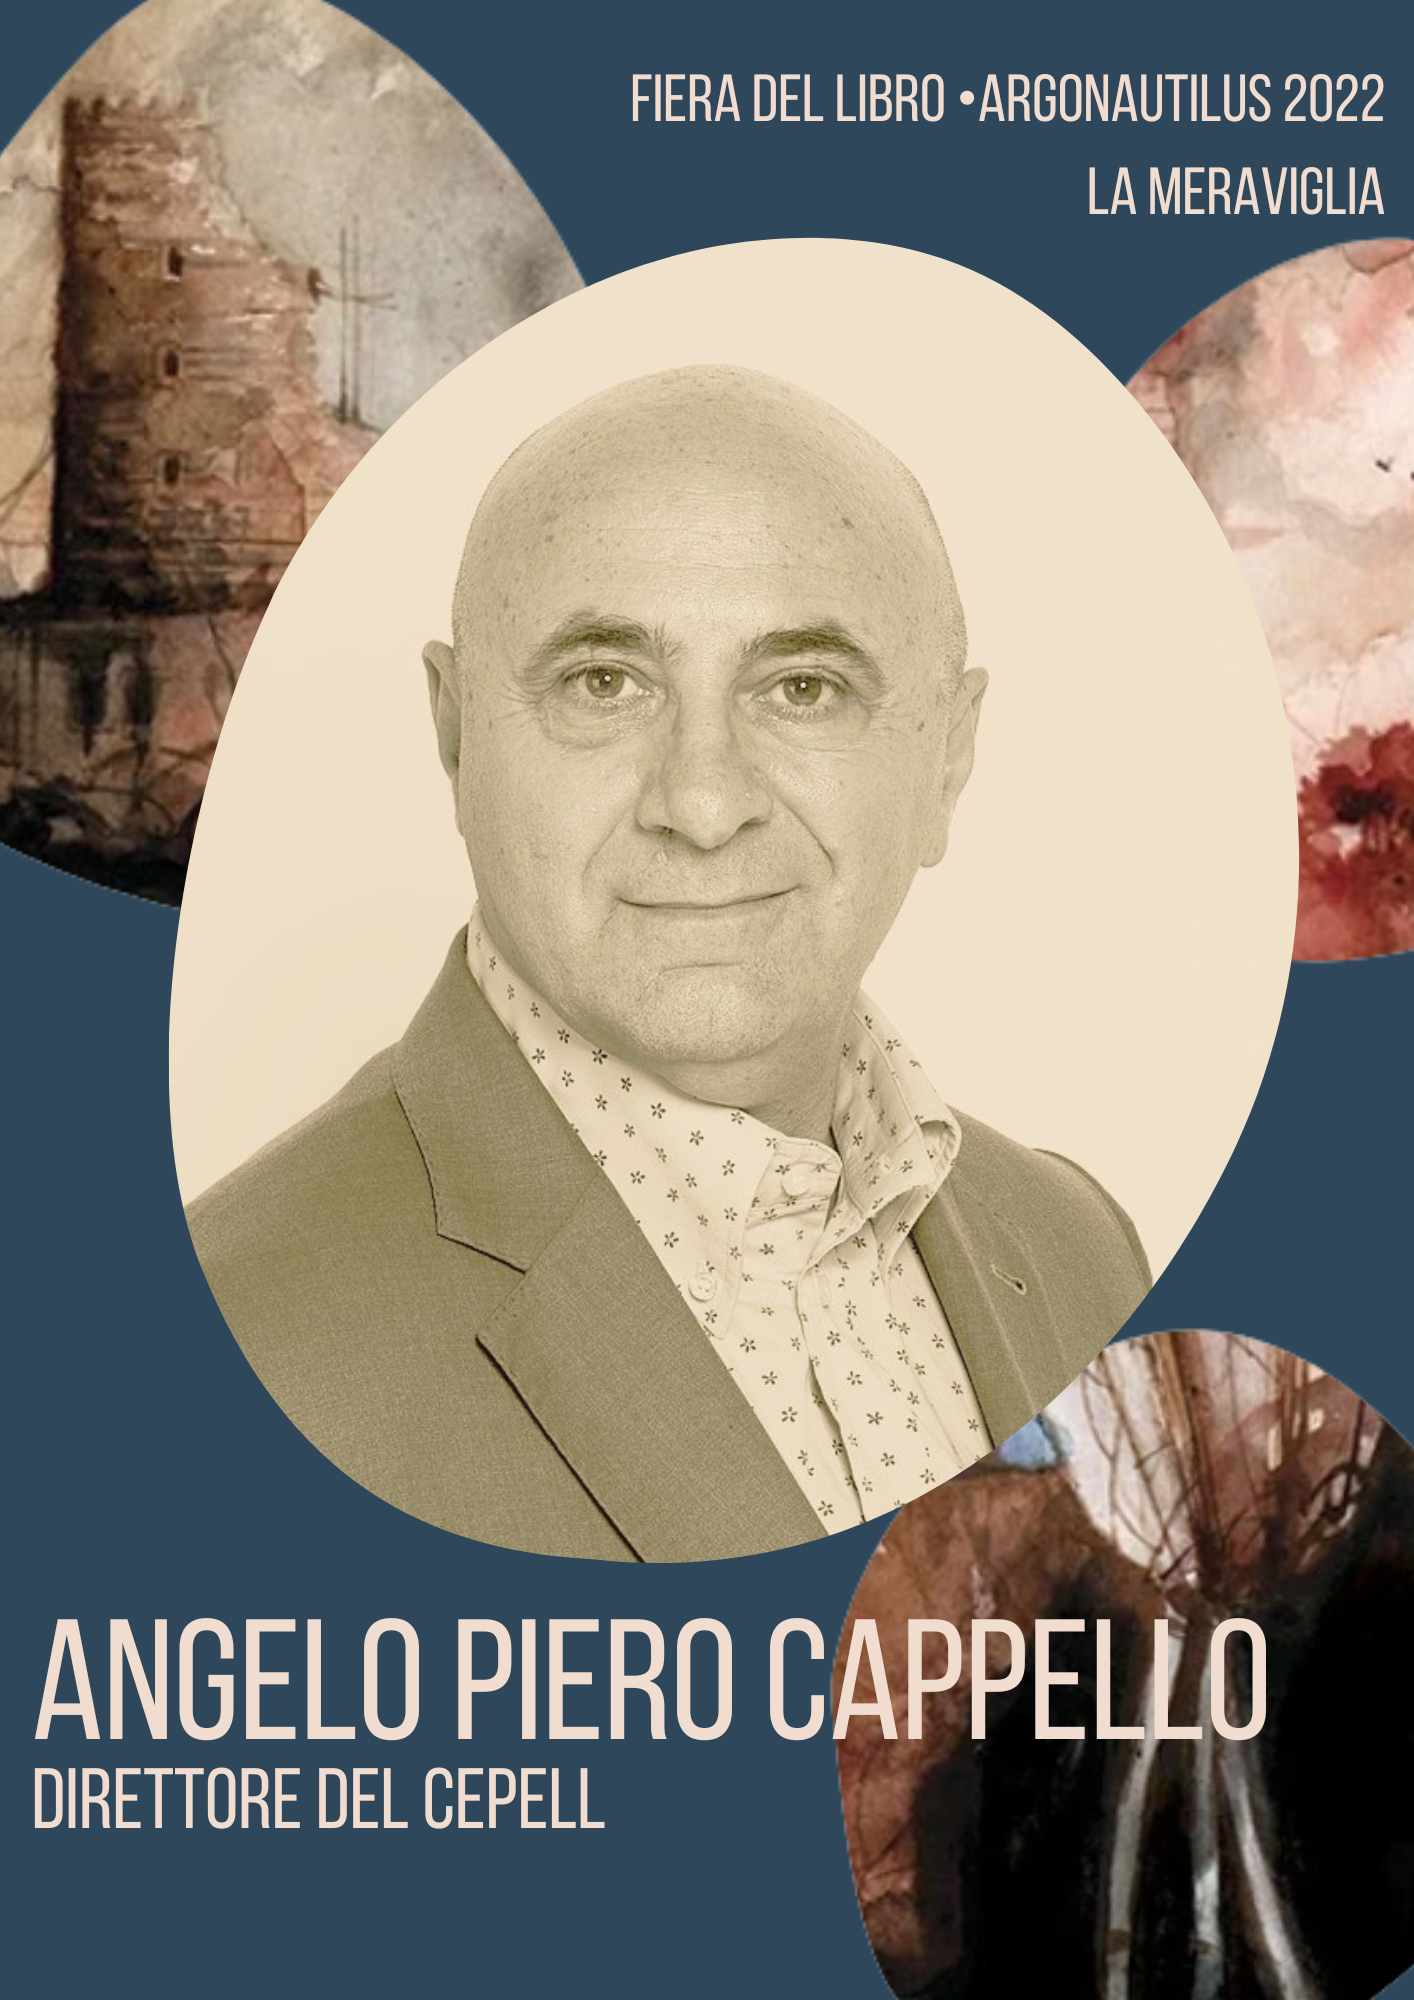 Piero Angelo Cappello